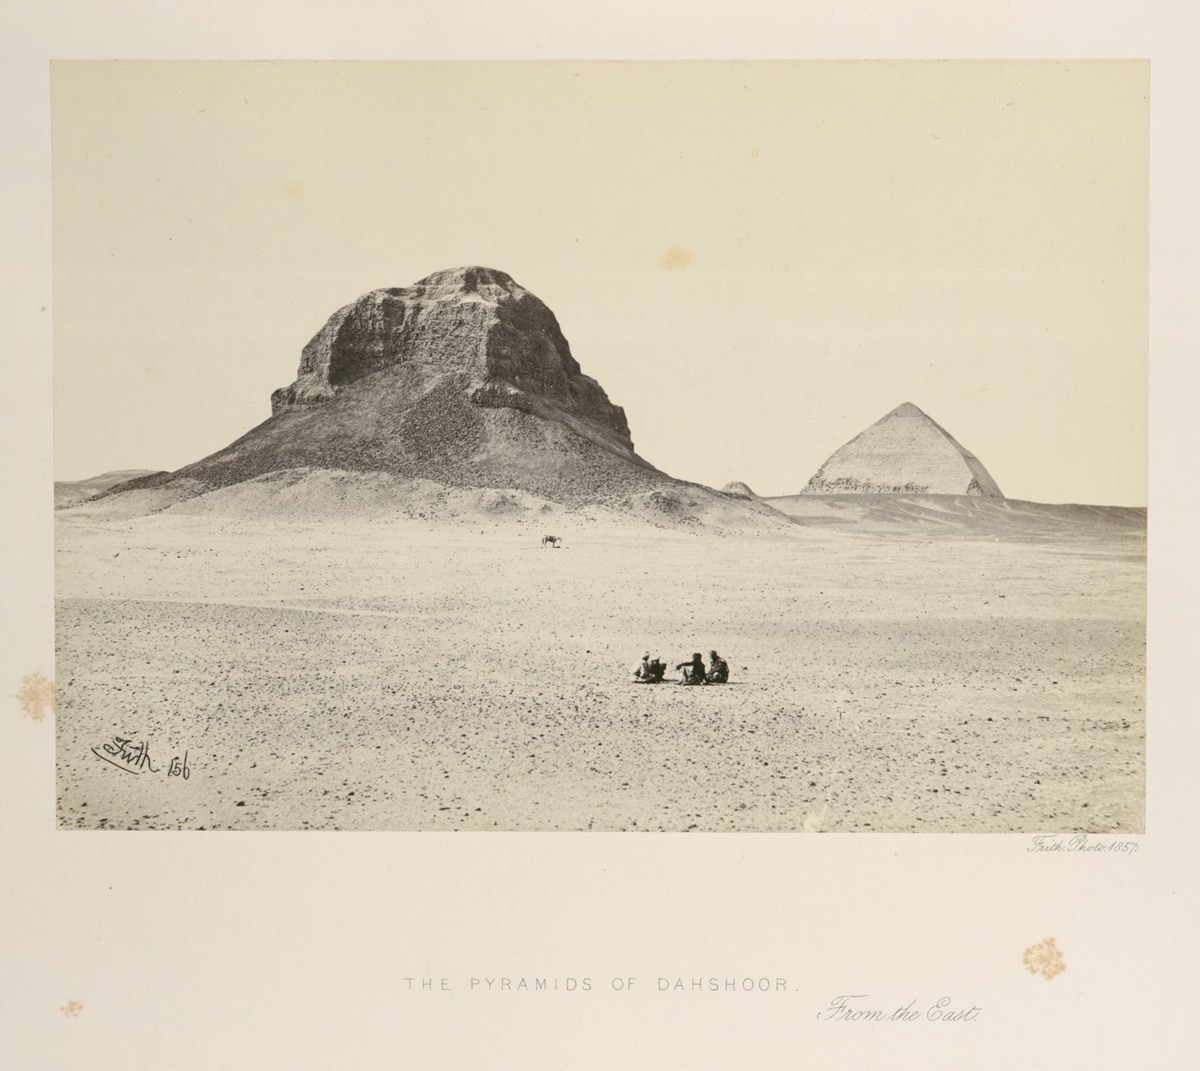 أهرامات دهشور، في مصر، في سنة 1857.